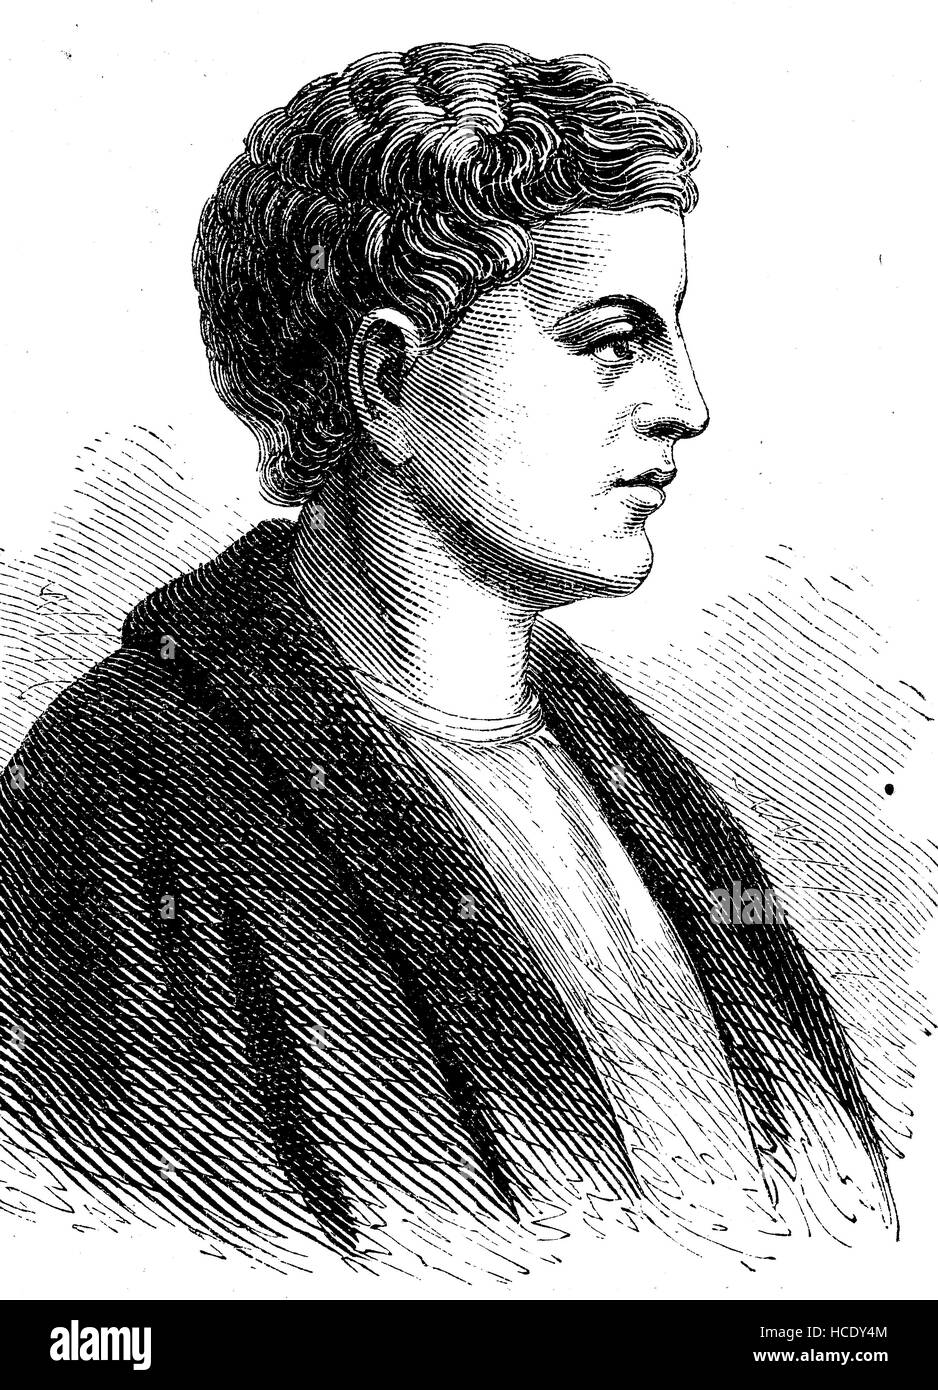 Quintus Cocles Flaccus, 65 BC - 8 v. Chr., bekannt als Horace, war die führende römische Lyriker während der Zeit des Augustus, die Geschichte des antiken Rom, Römisches Reich, Italien Stockfoto